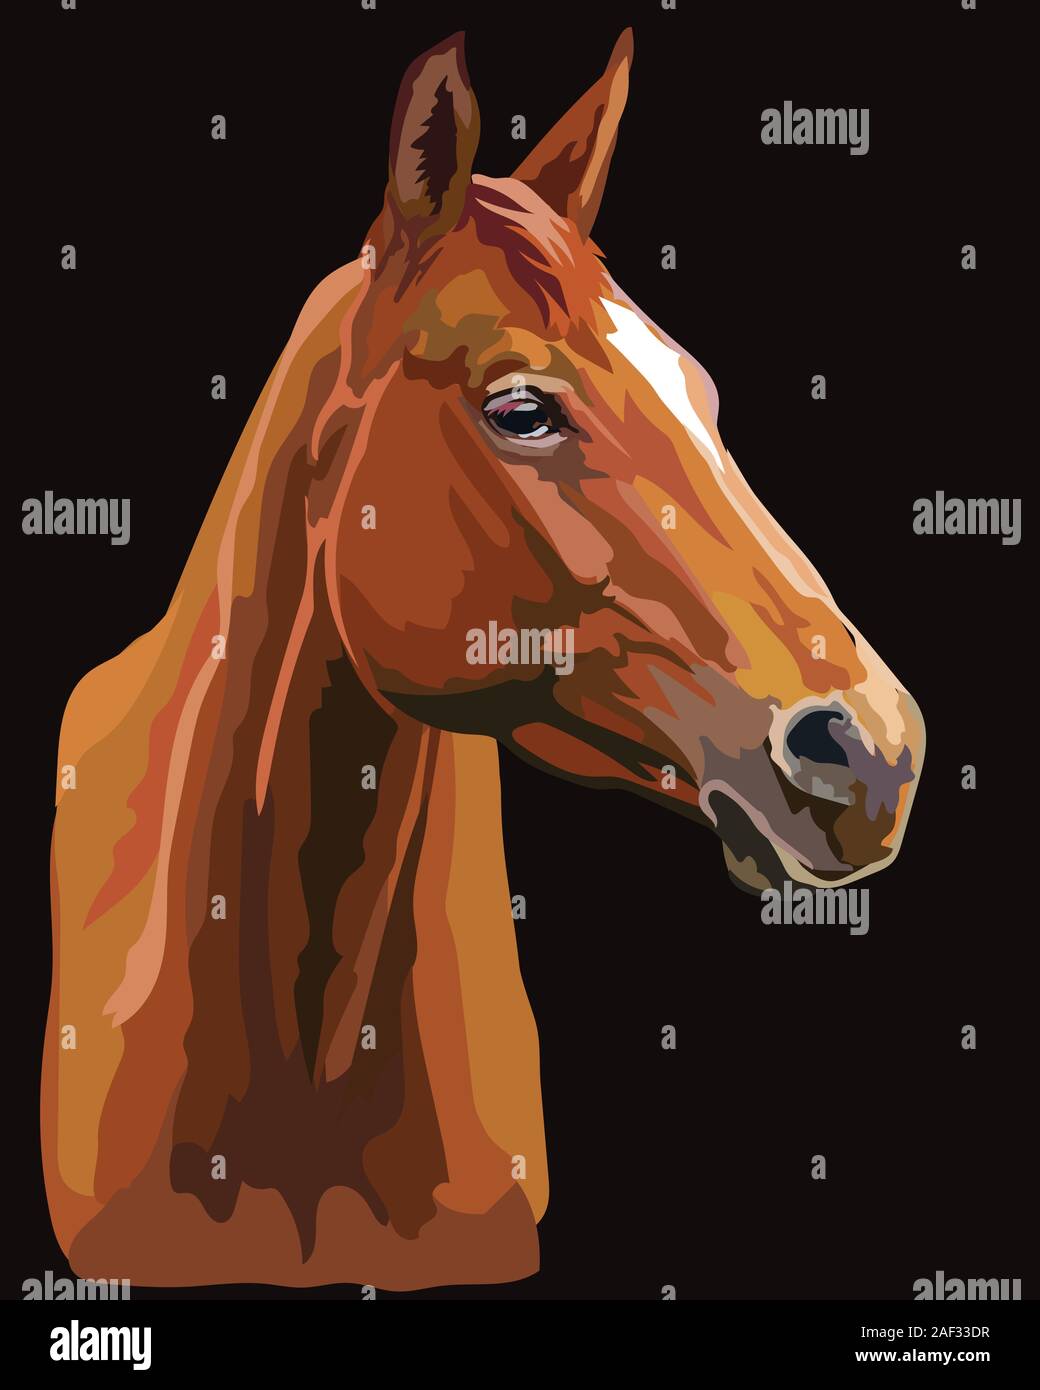 Bunte Zeichnung Pferd portrait. Pferdekopf im Profil auf schwarzem Hintergrund isoliert. Vektor Zeichnung Abbildung. Retro Style Portrait von Bay Horse. Stock Vektor